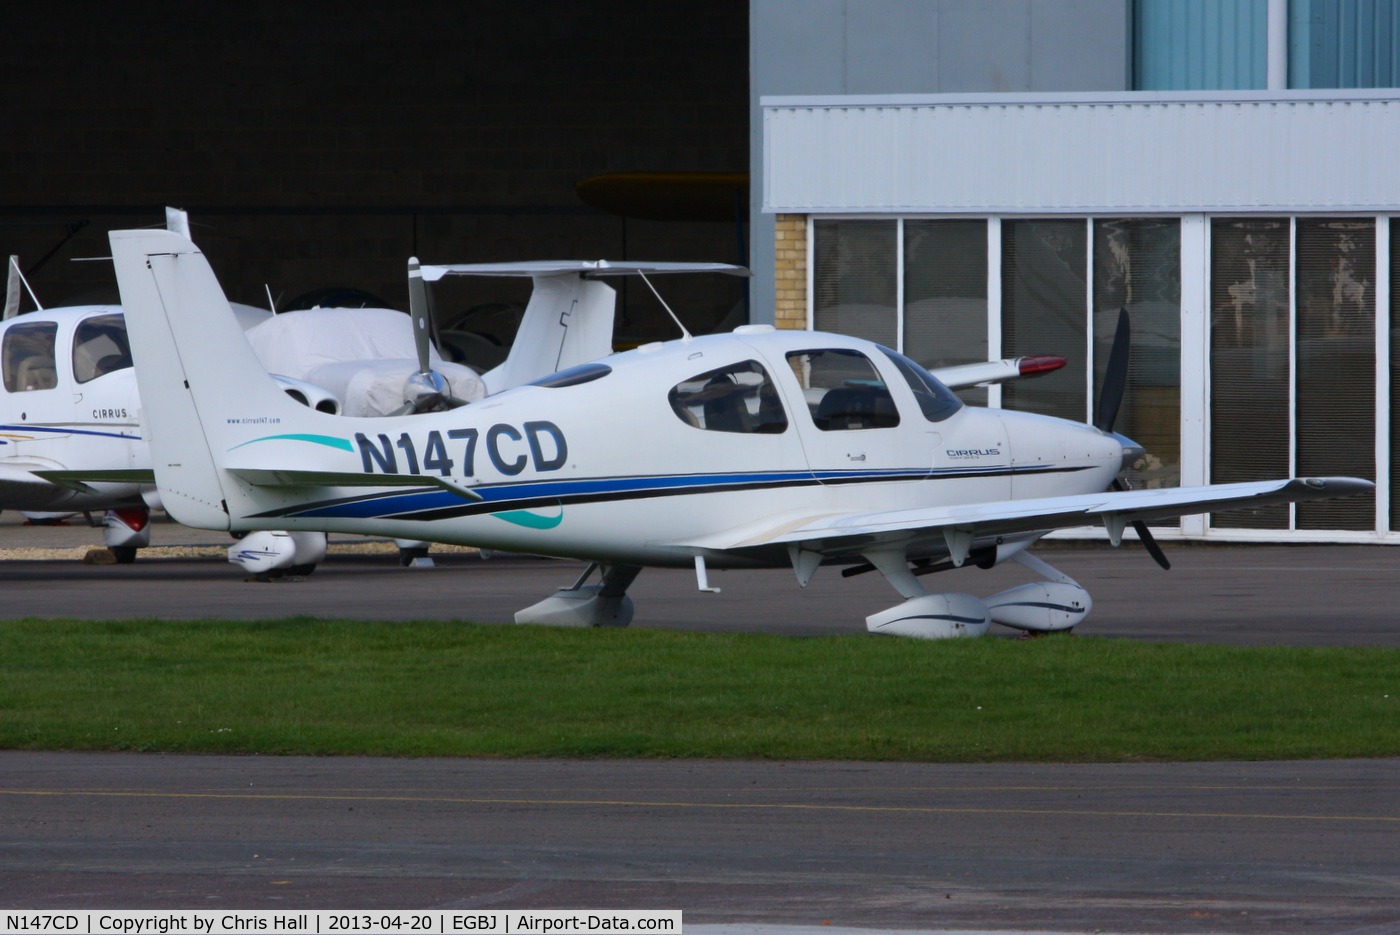 N147CD, 2000 Cirrus SR20 C/N 1043, Cirrus147 flying group